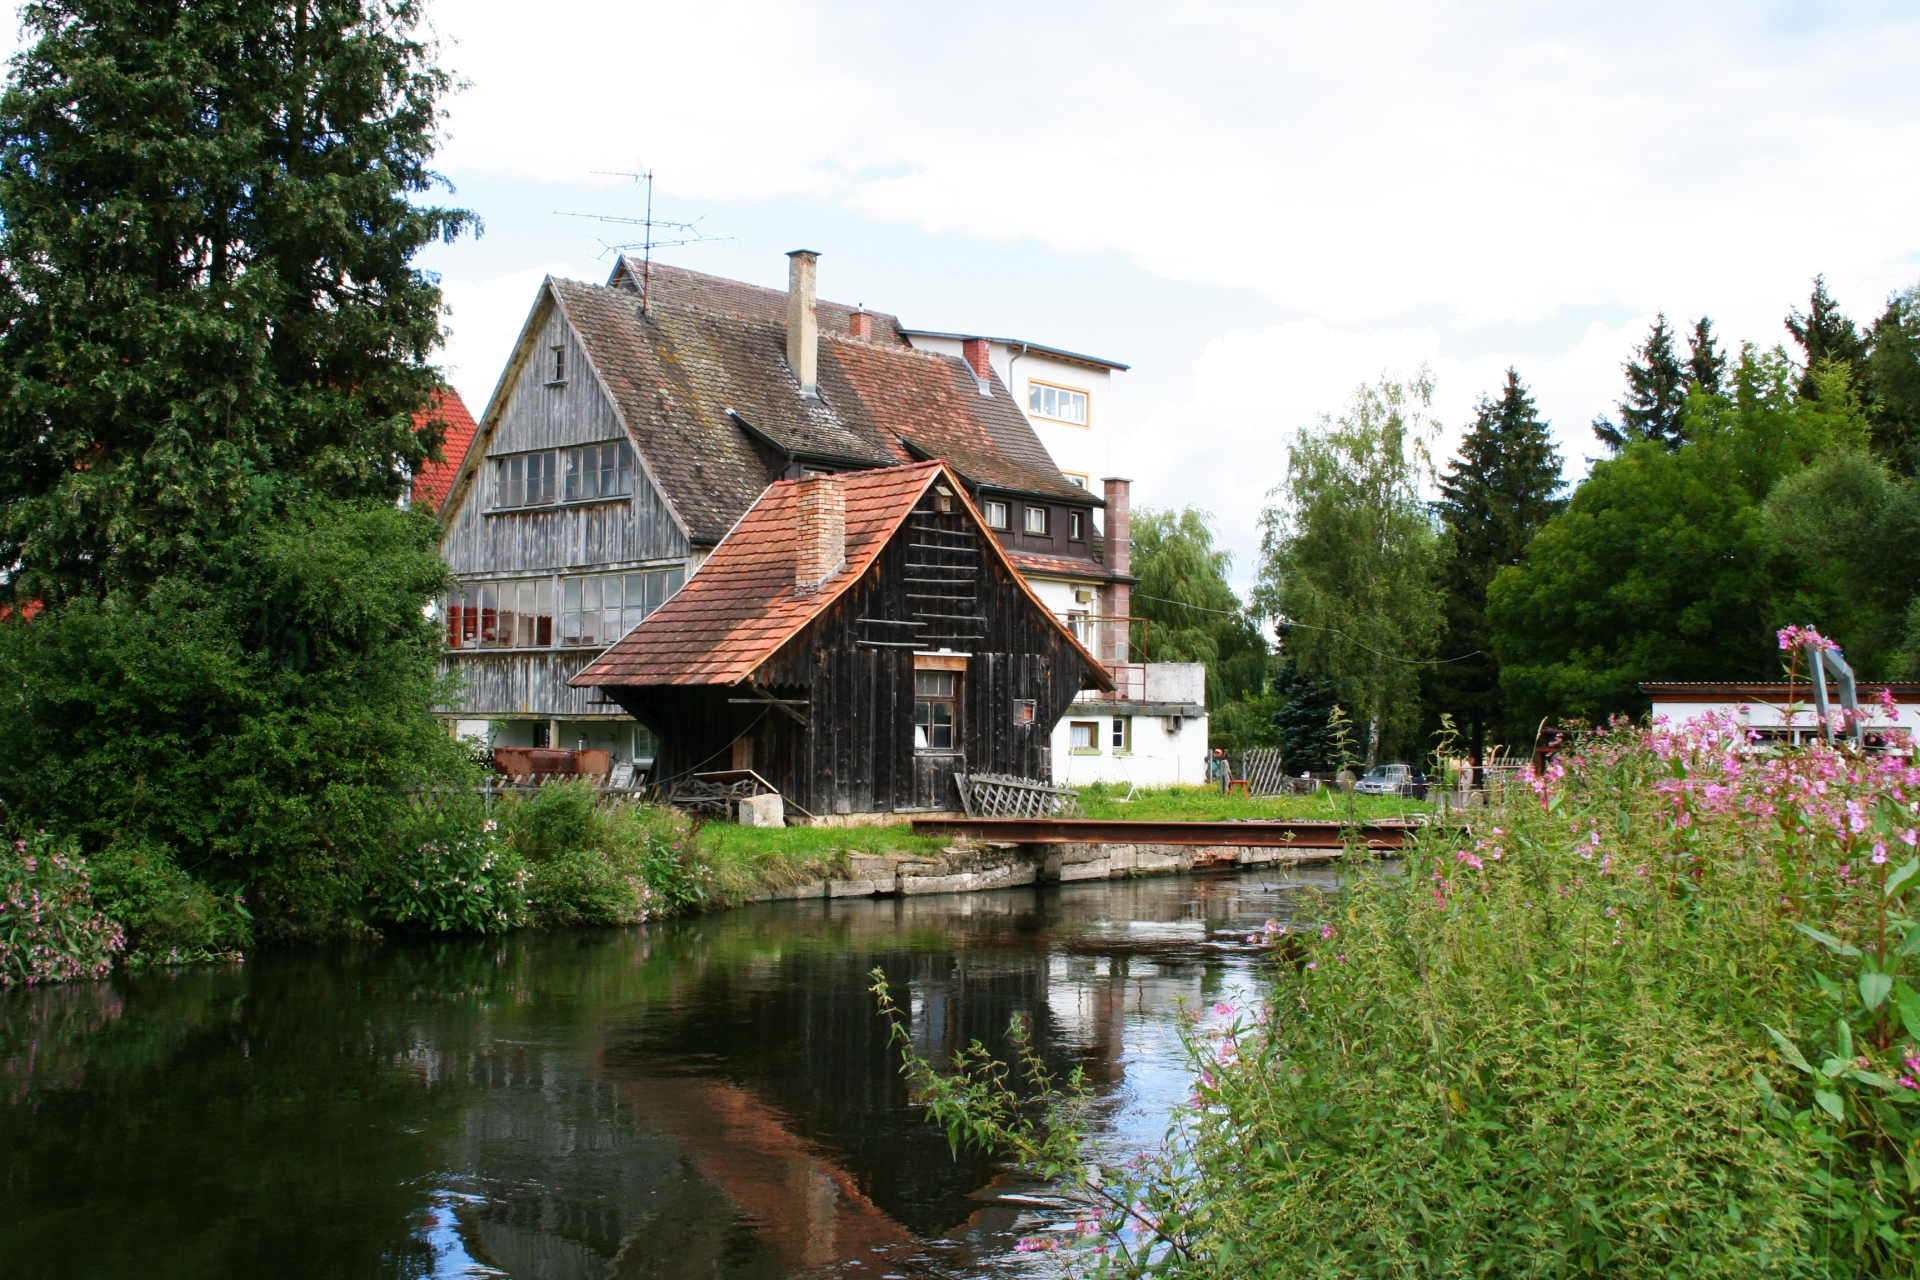 Bild von einem alten Gebäude, der Stadtmühle in Geisingen von hinten, am Wasser gelegen, eingesäumt von Wiesen und Bäumen